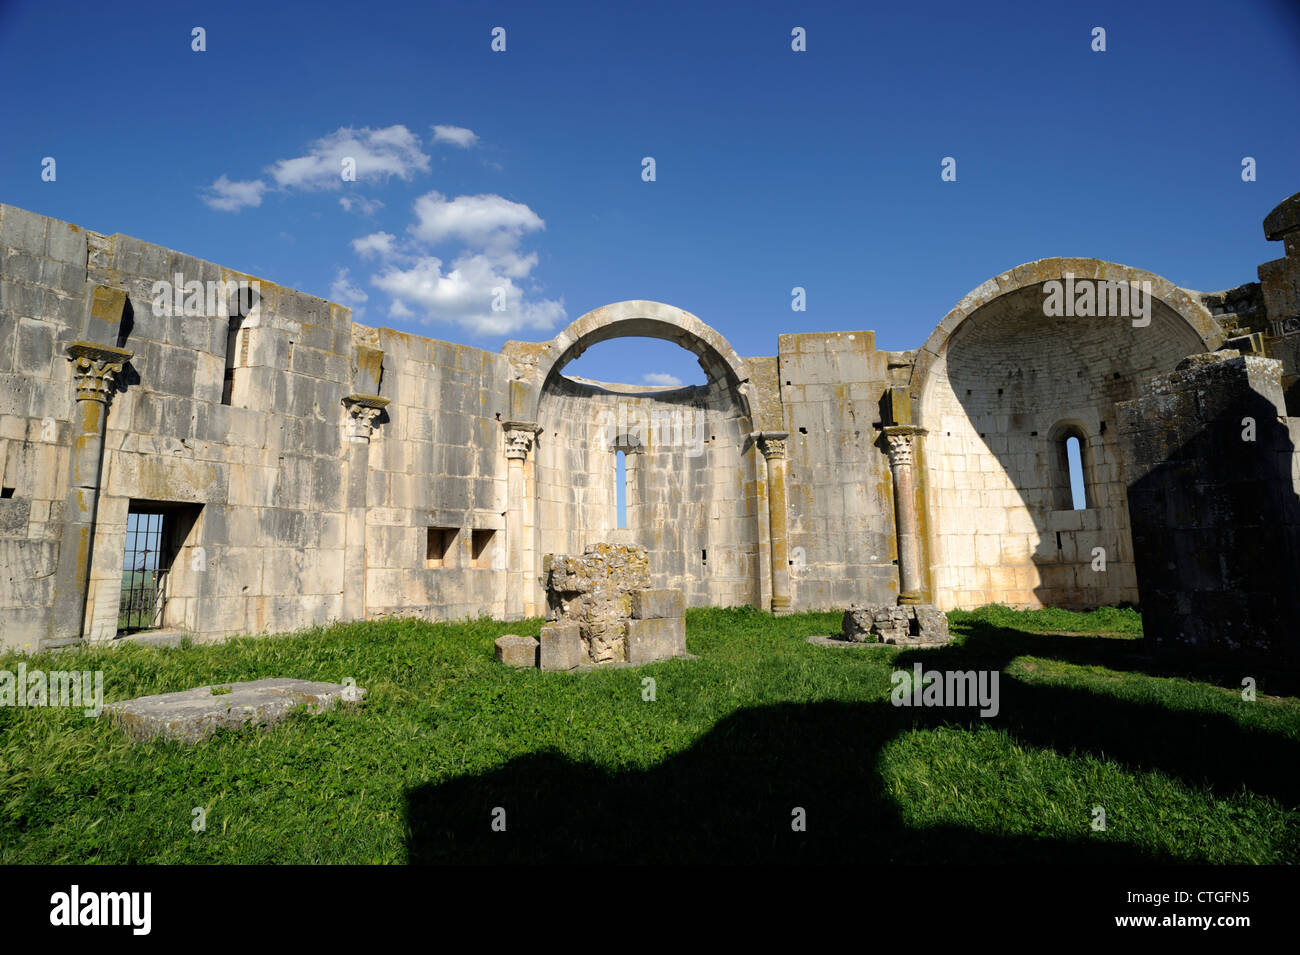 Italia, Basilicata, venosa, parco archeologico, rovine della chiesa medievale Foto Stock